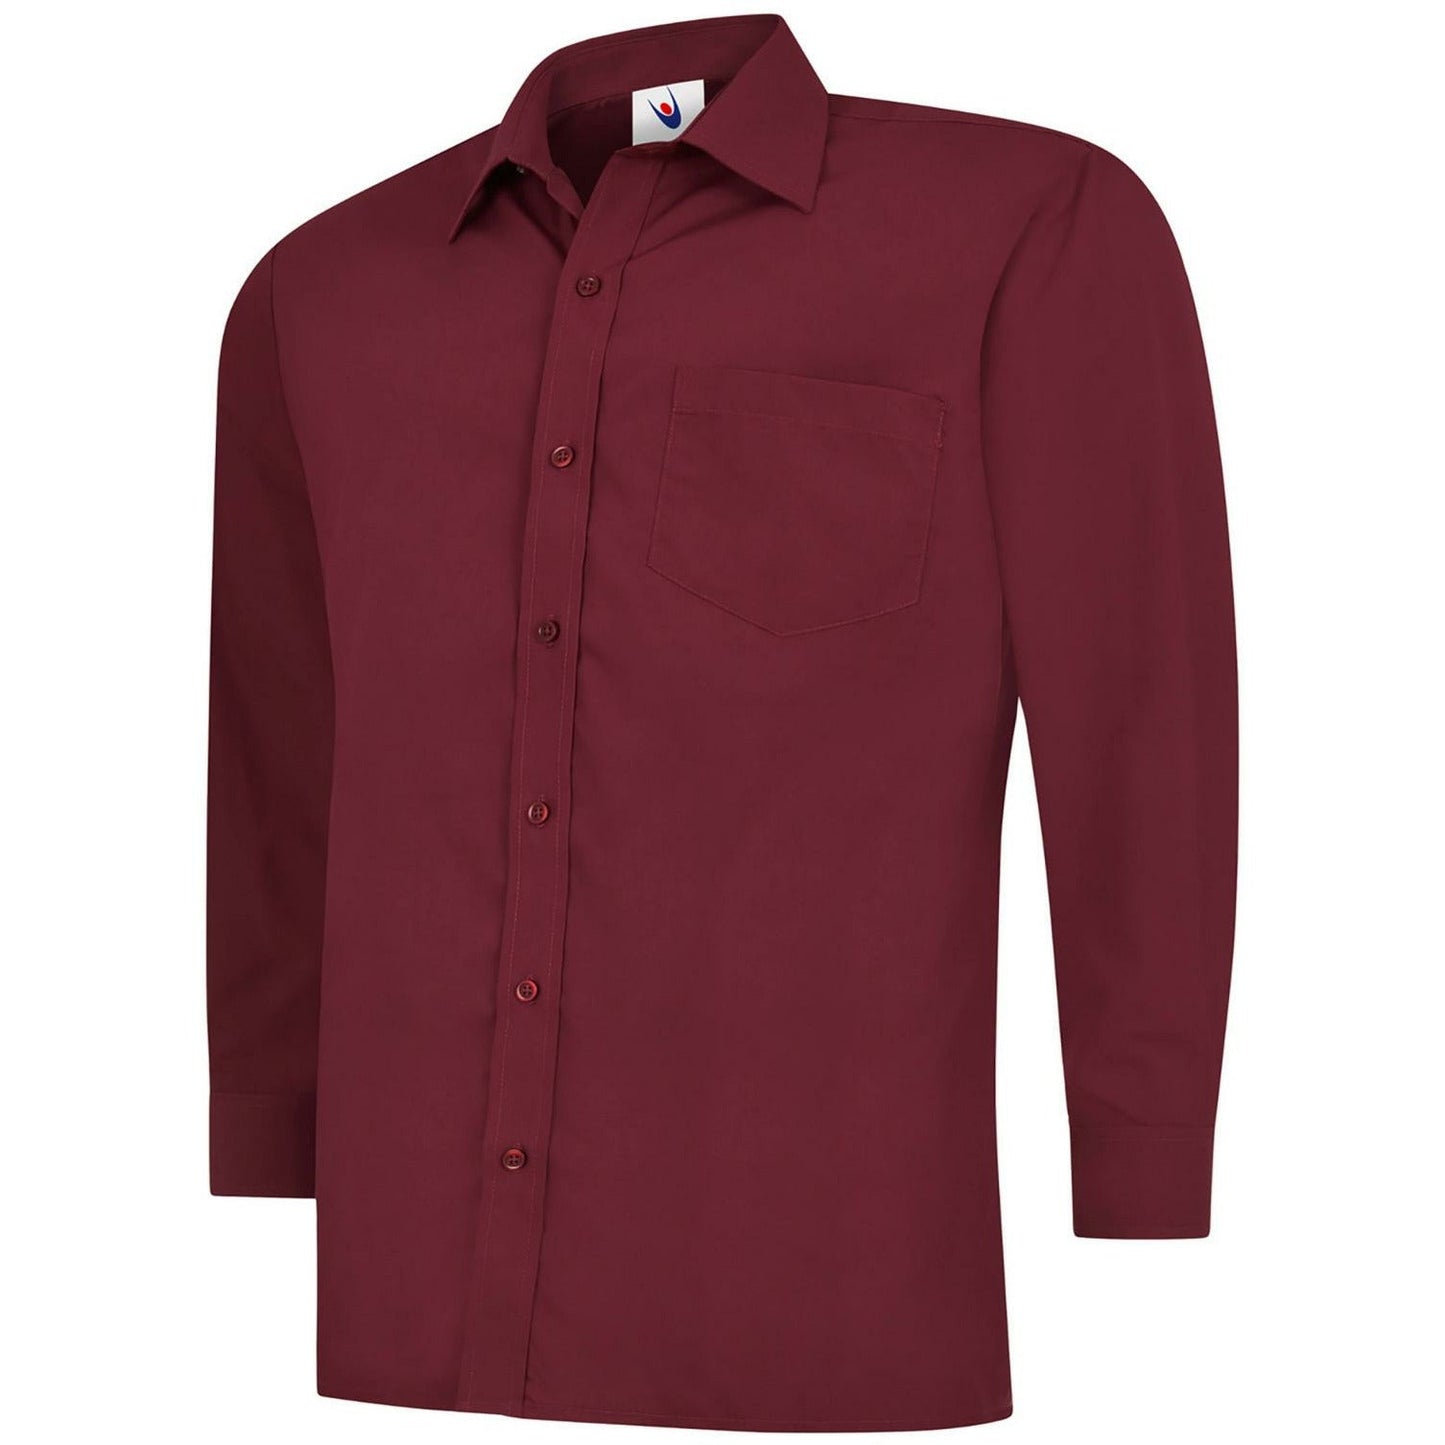 Mens Poplin Full Sleeve Shirt (14.5 - 16.5) - Burgundy